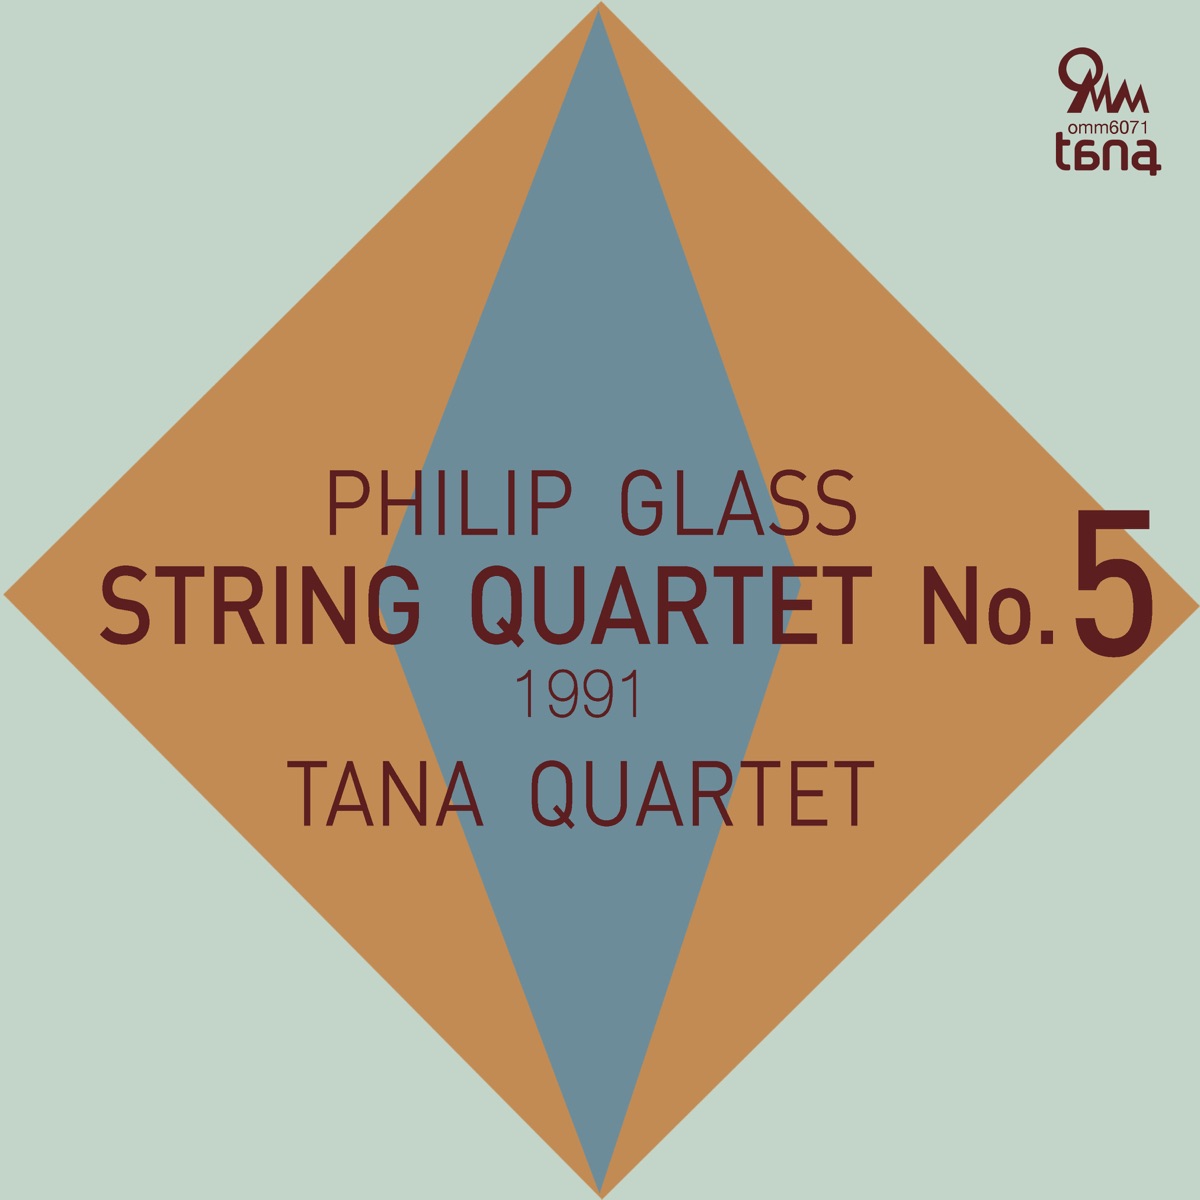 Philip Glass: String Quartet No. 5 (1991) - EP - Album by Tana Quartet -  Apple Music